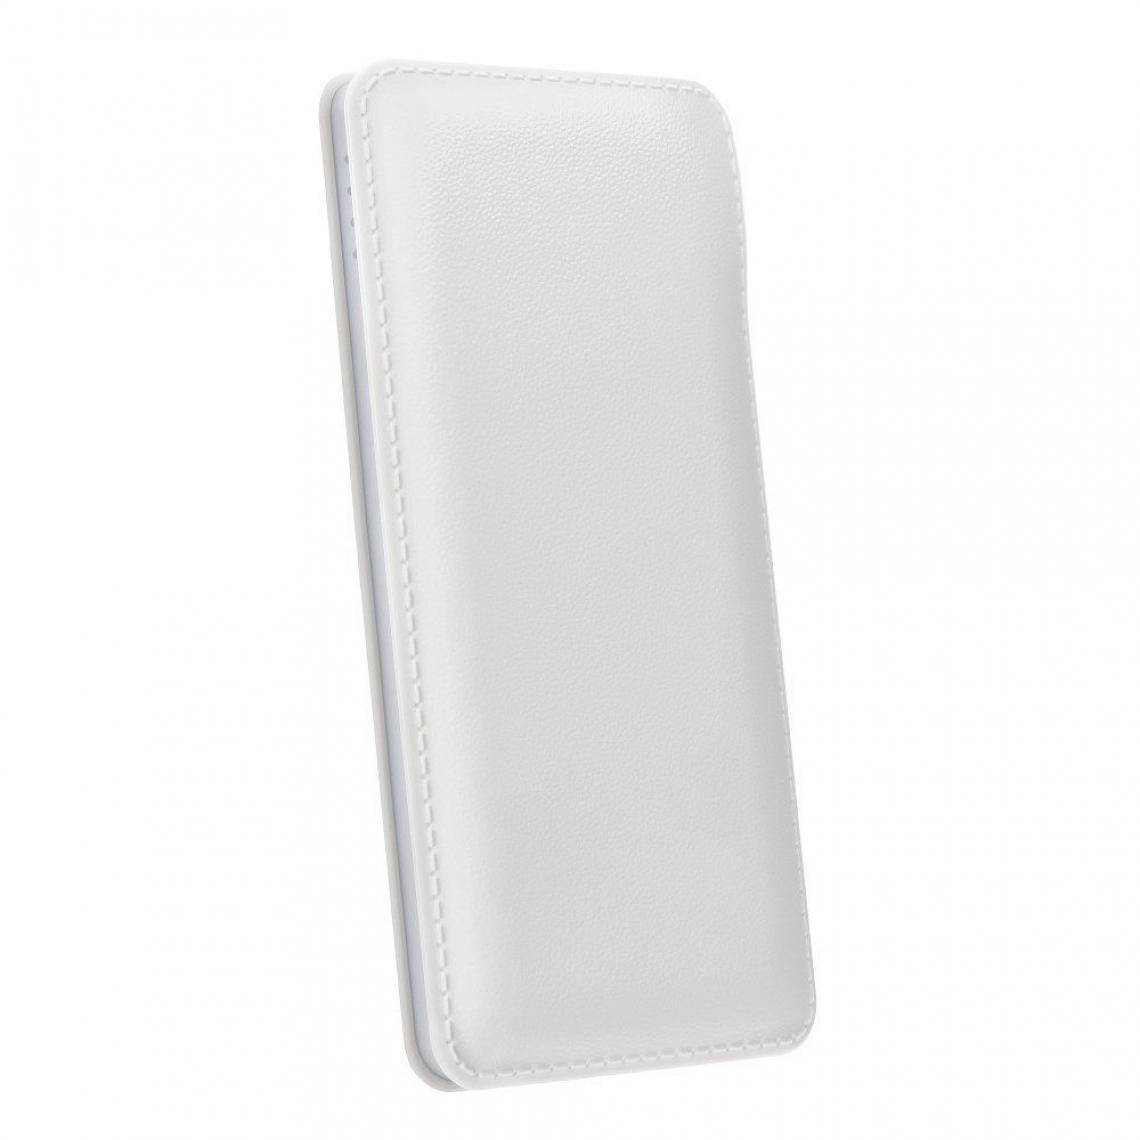 Ozzzo - Chargeur batterie externe 20000 mAh powerbank ozzzo blanc pour LG Q8 - Autres accessoires smartphone